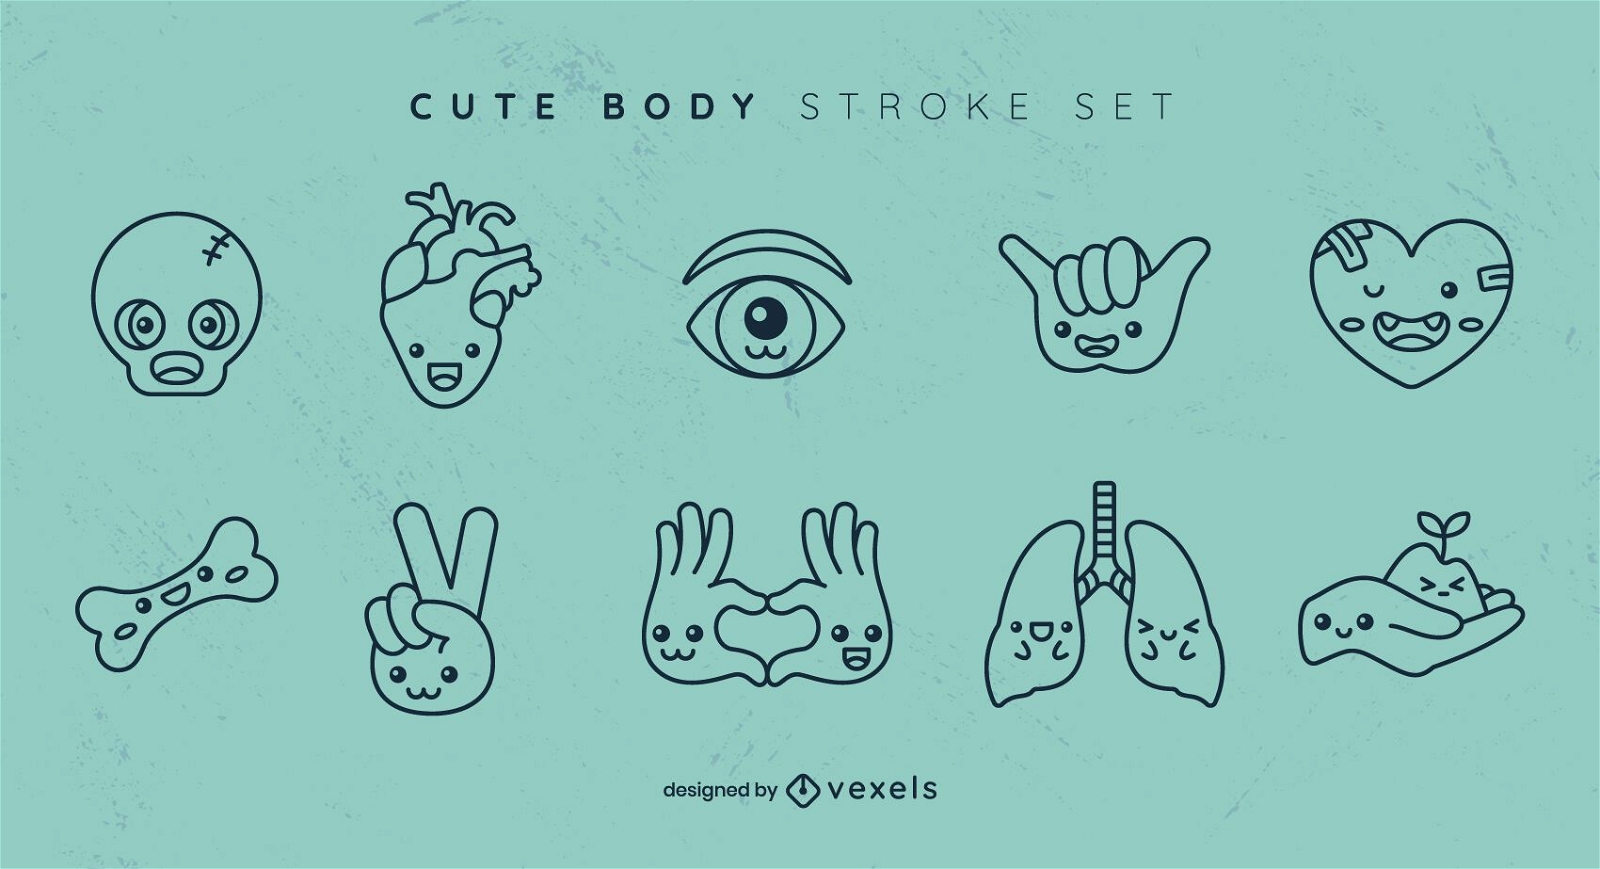 Cute body stroke set